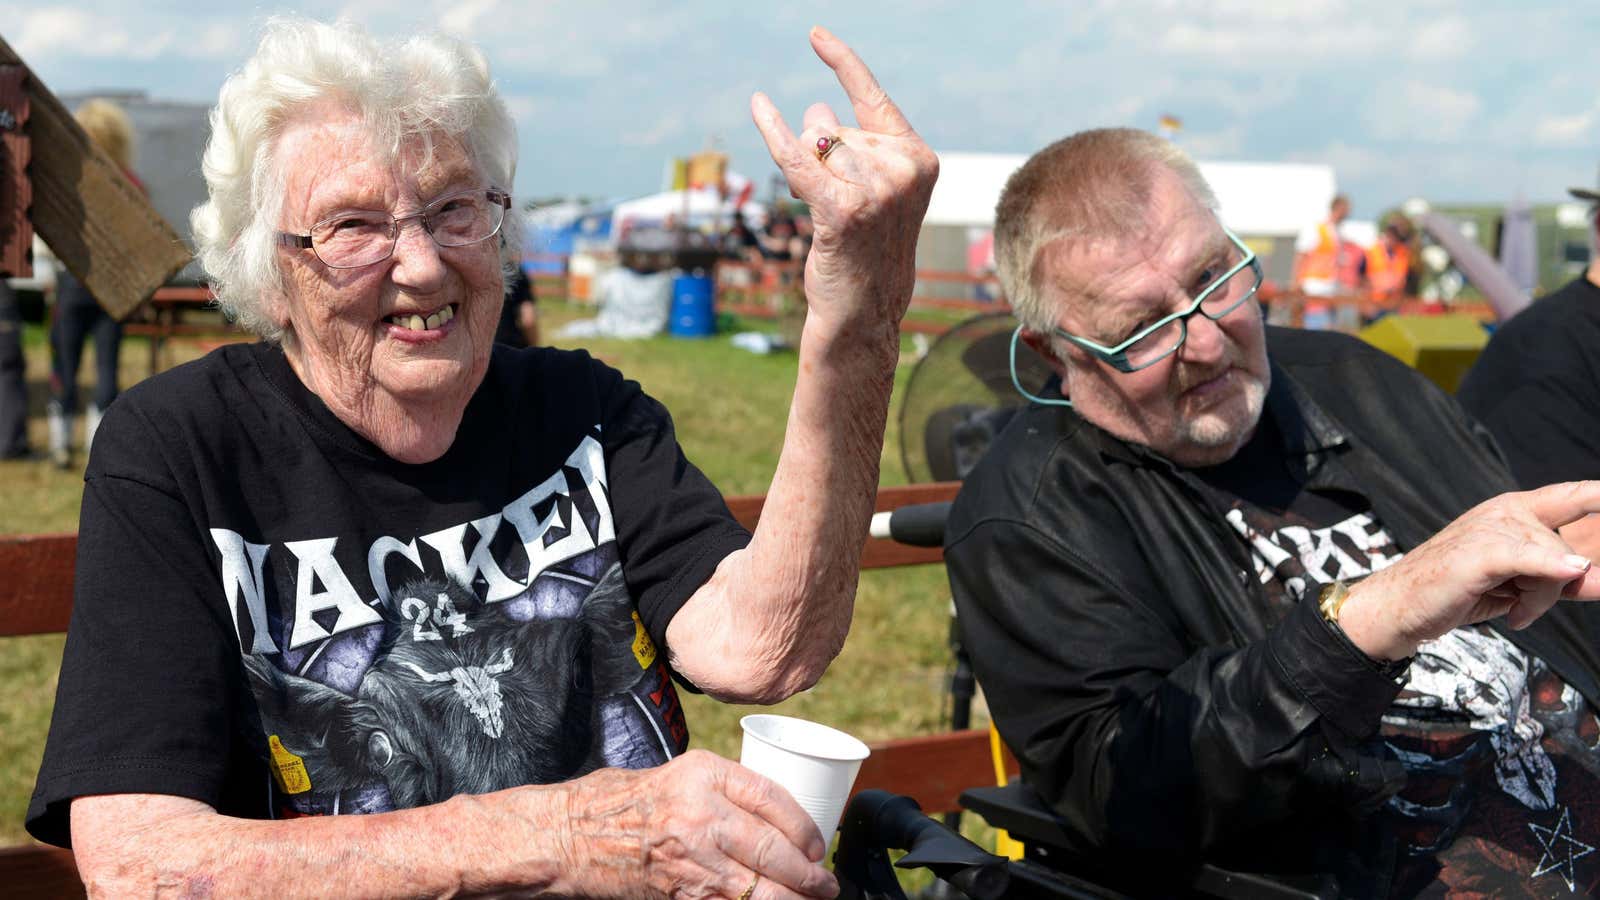 A 90-year-old heavy metal fan.